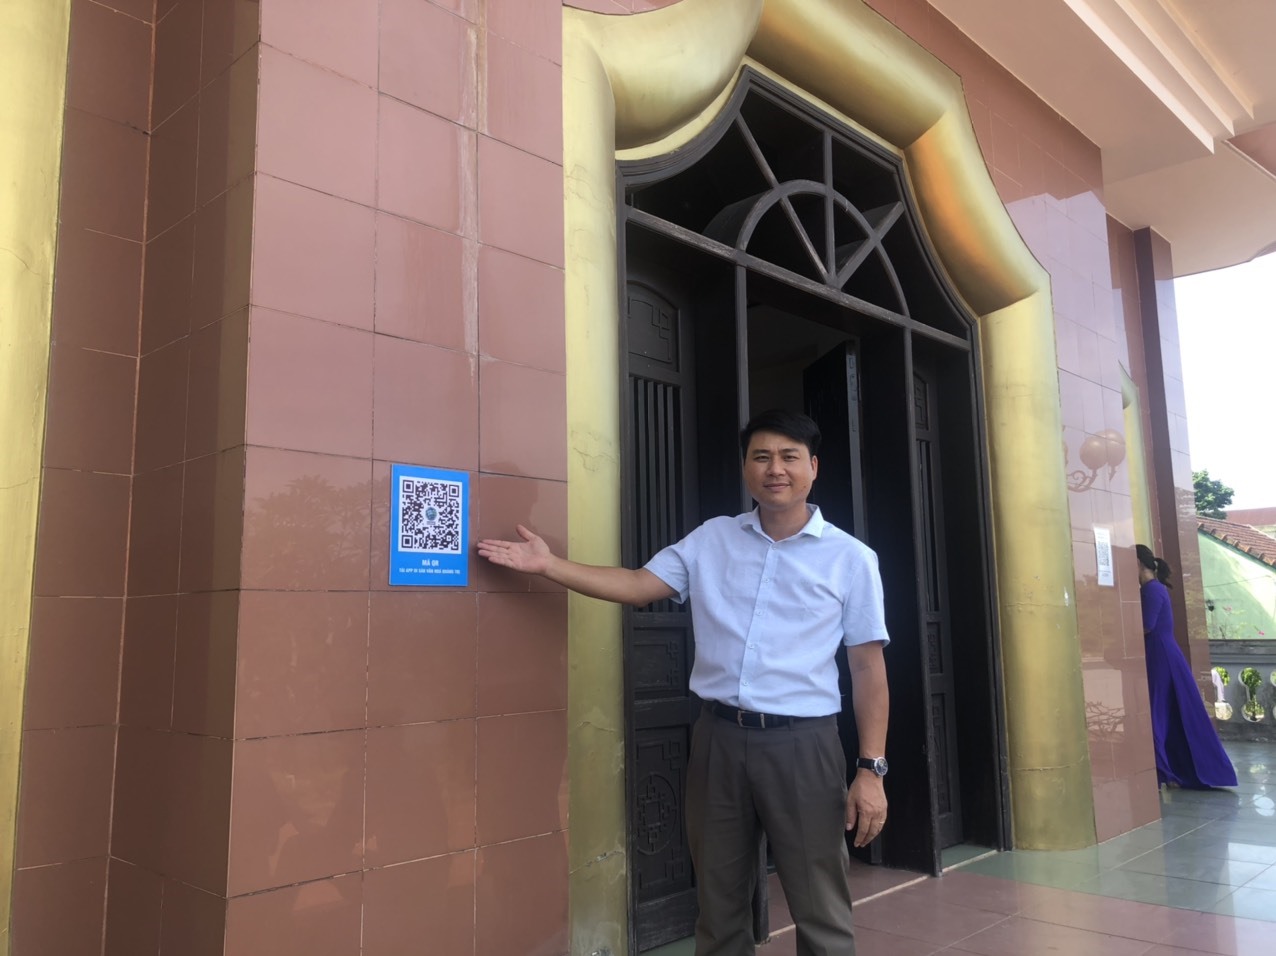 Mã QR tải app Di sản văn hóa Quảng Trị tại Nhà lưu niệm Tổng Bí thư Lê Duẩn - Ảnh: T.N